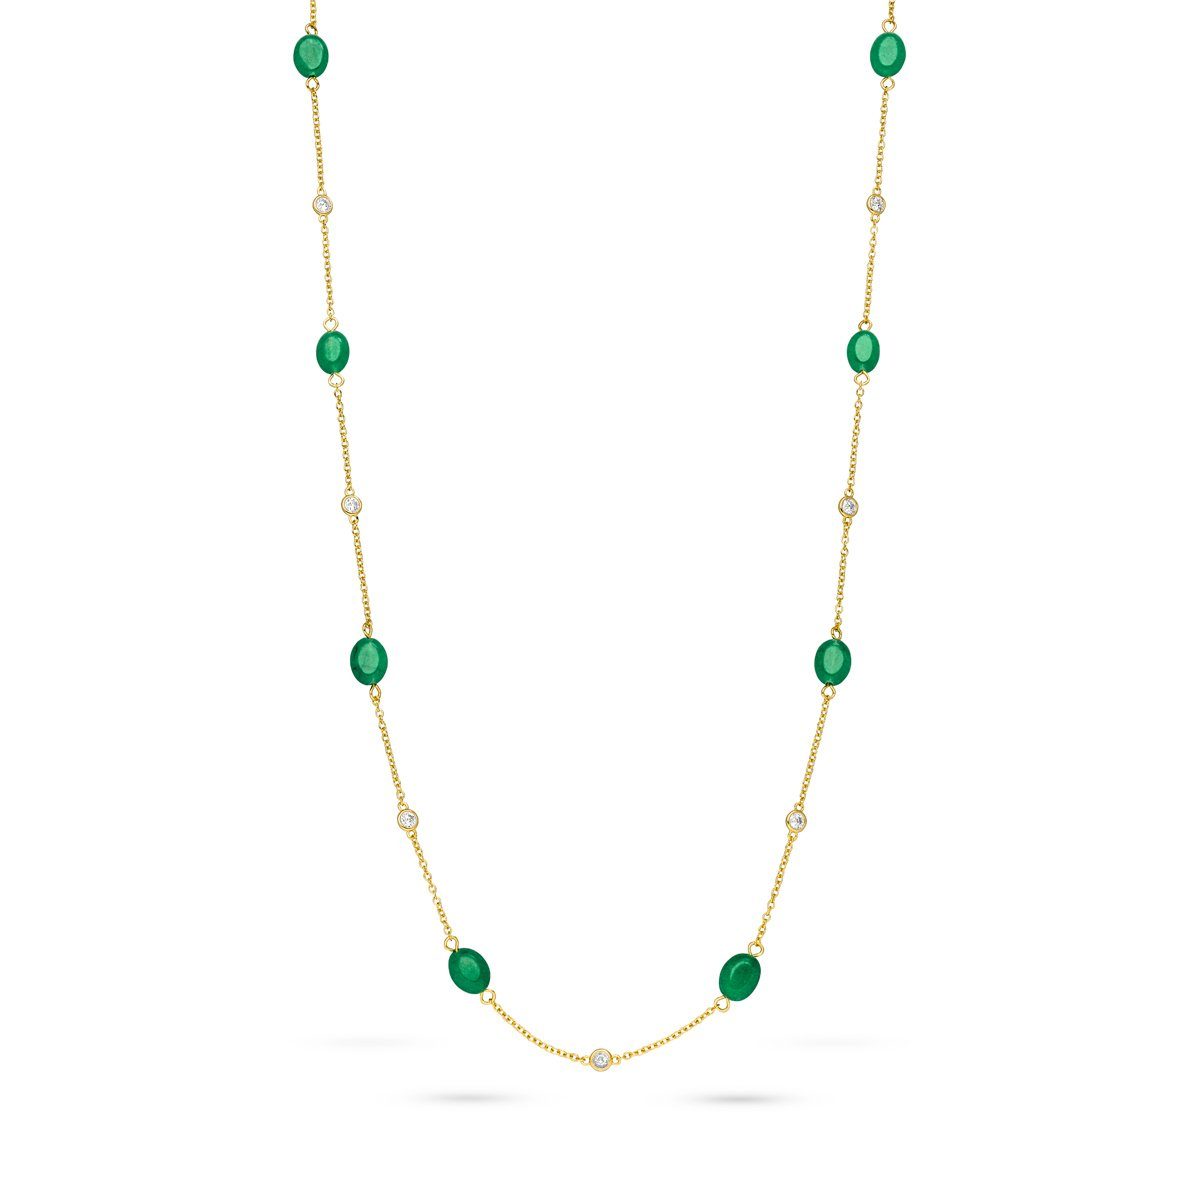 Fiocco Jewelry Collier Bloomy Green Kette, 925 Silber | Lange Ketten